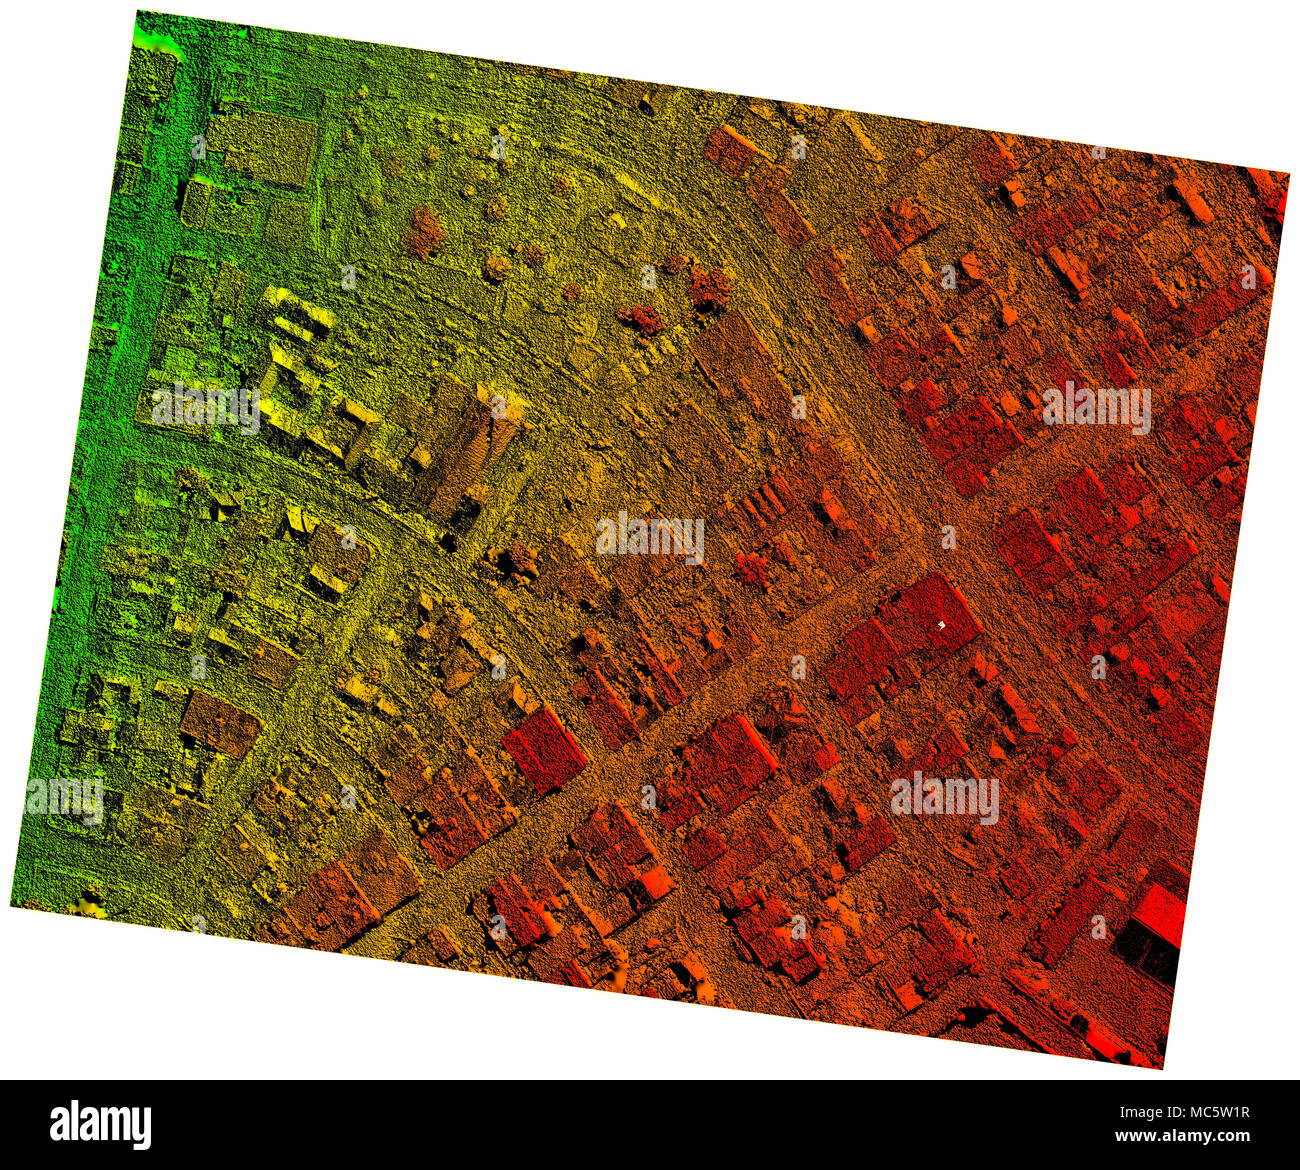 Hohe Auflösung orthorektifizierte Orthorektifizierung Luftbildkarte für Photogrammetrie in Ecuador Pelileo verwendet Stockfoto